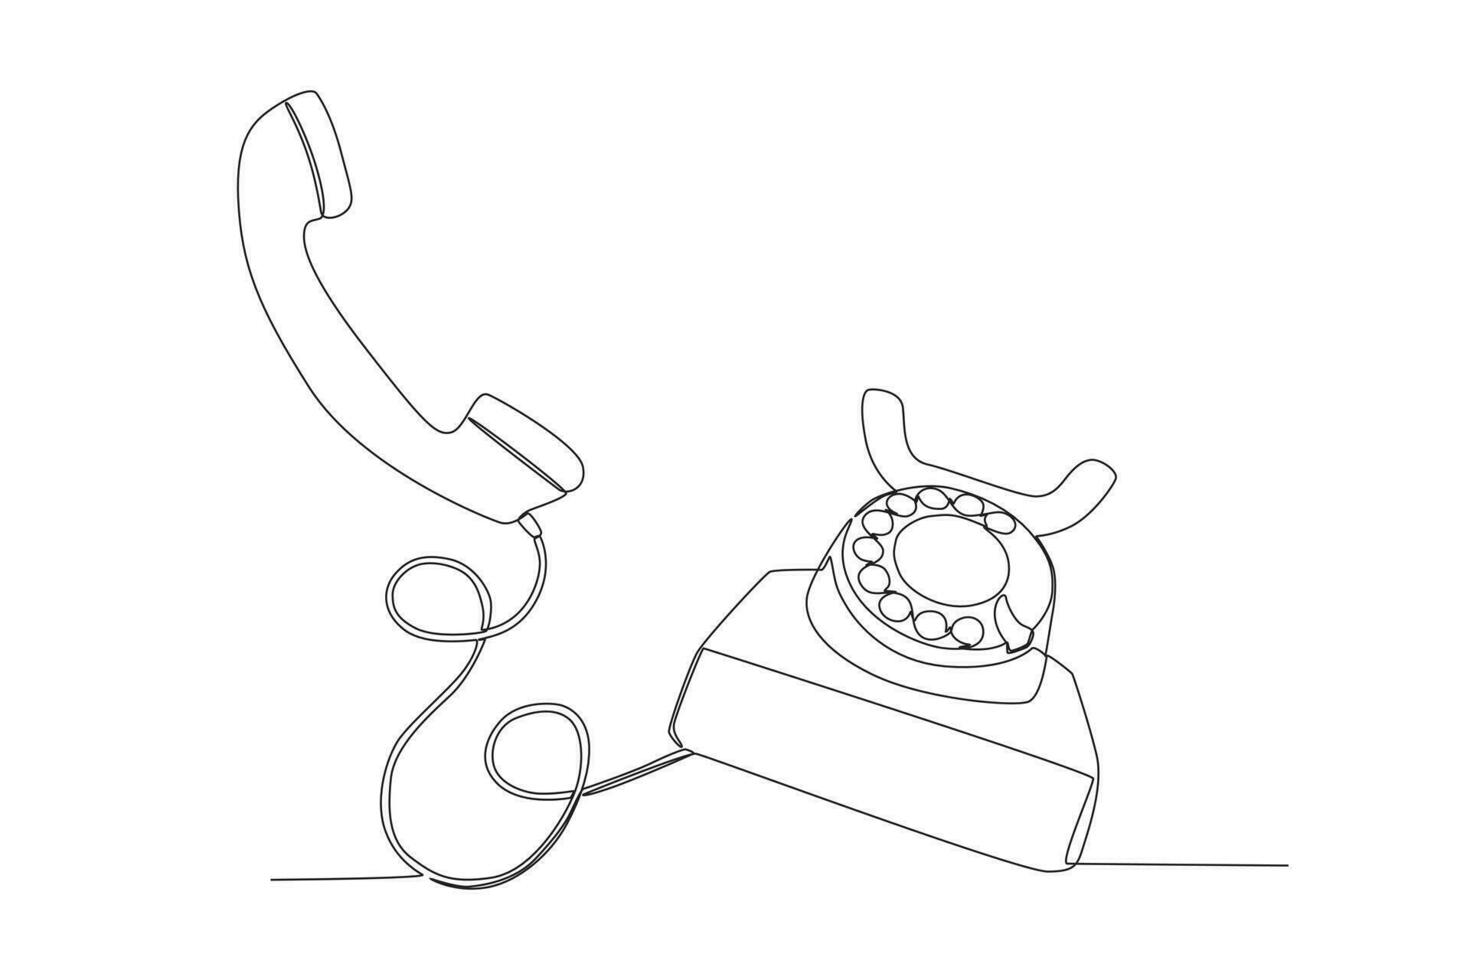 un dessin au trait continu de l'ancien téléphone de bureau analogique antique vintage pour communiquer. Concept de dispositif de télécommunication classique rétro ligne unique dessiner illustration vectorielle de conception graphique vecteur